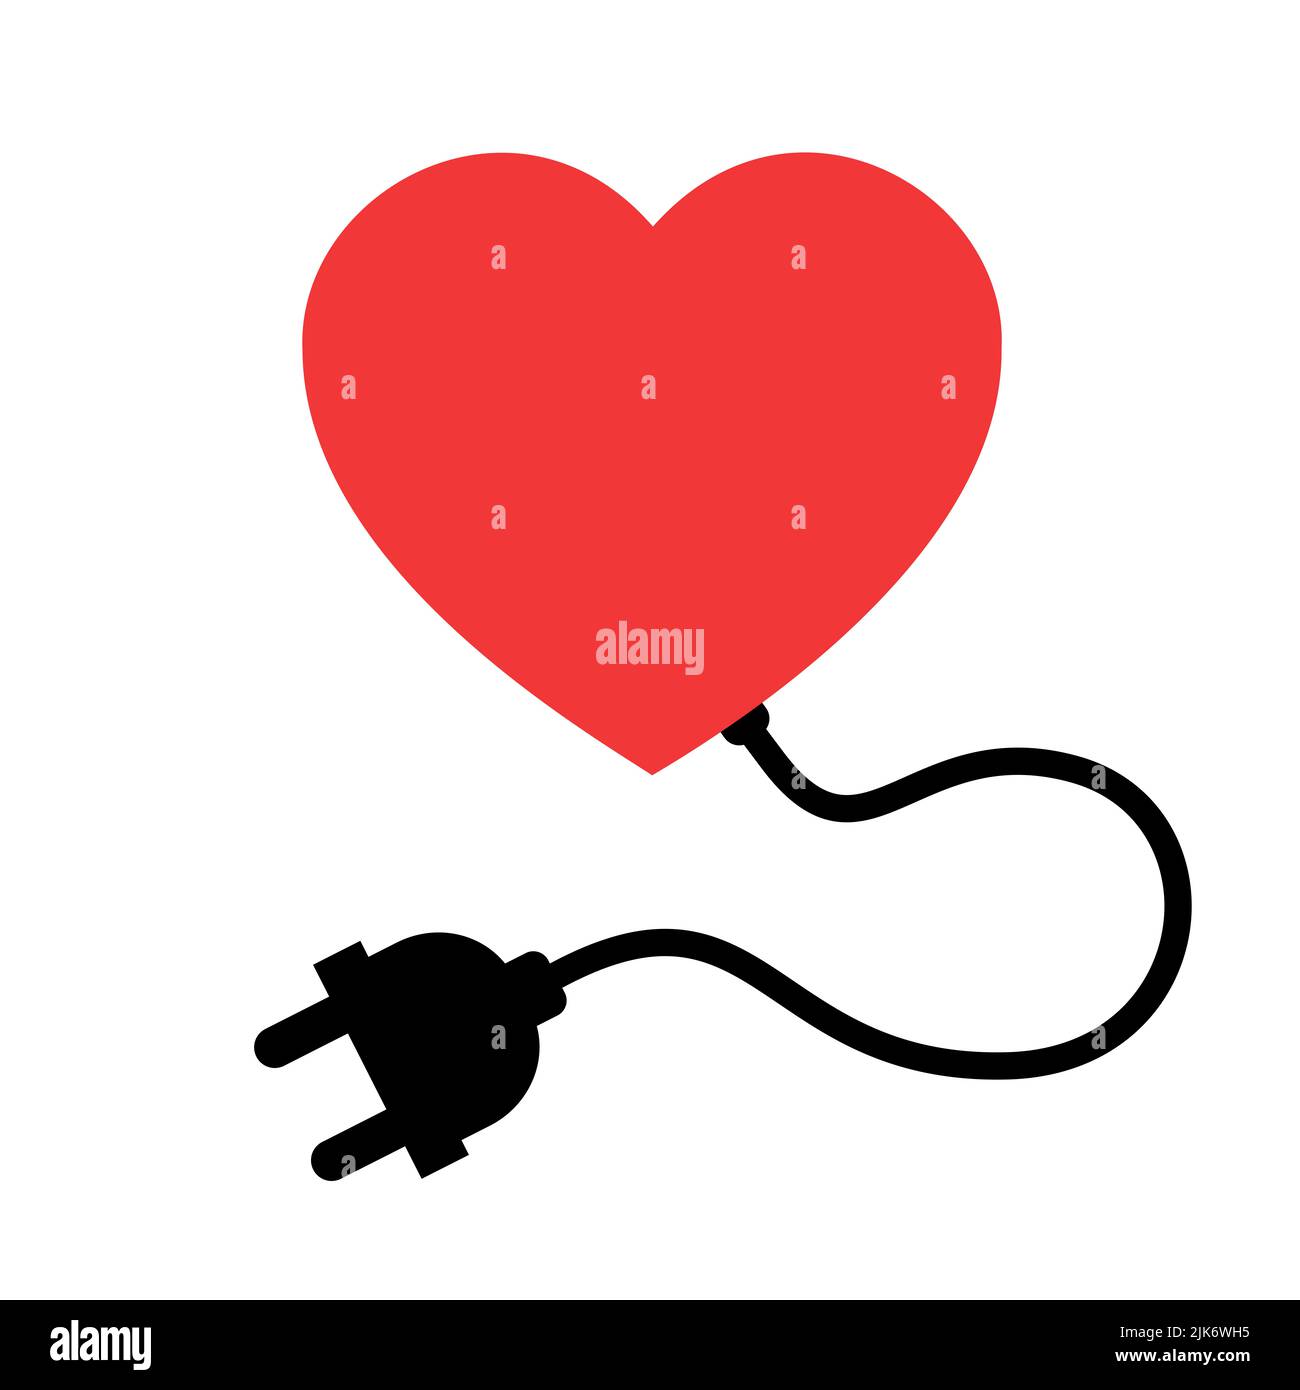 Apague el corazón - el órgano humano está desconectado de la electricidad y la energía eléctrica. Parada, fallo, ruptura, fallo y parada del órgano cardíaco. Ve Foto de stock